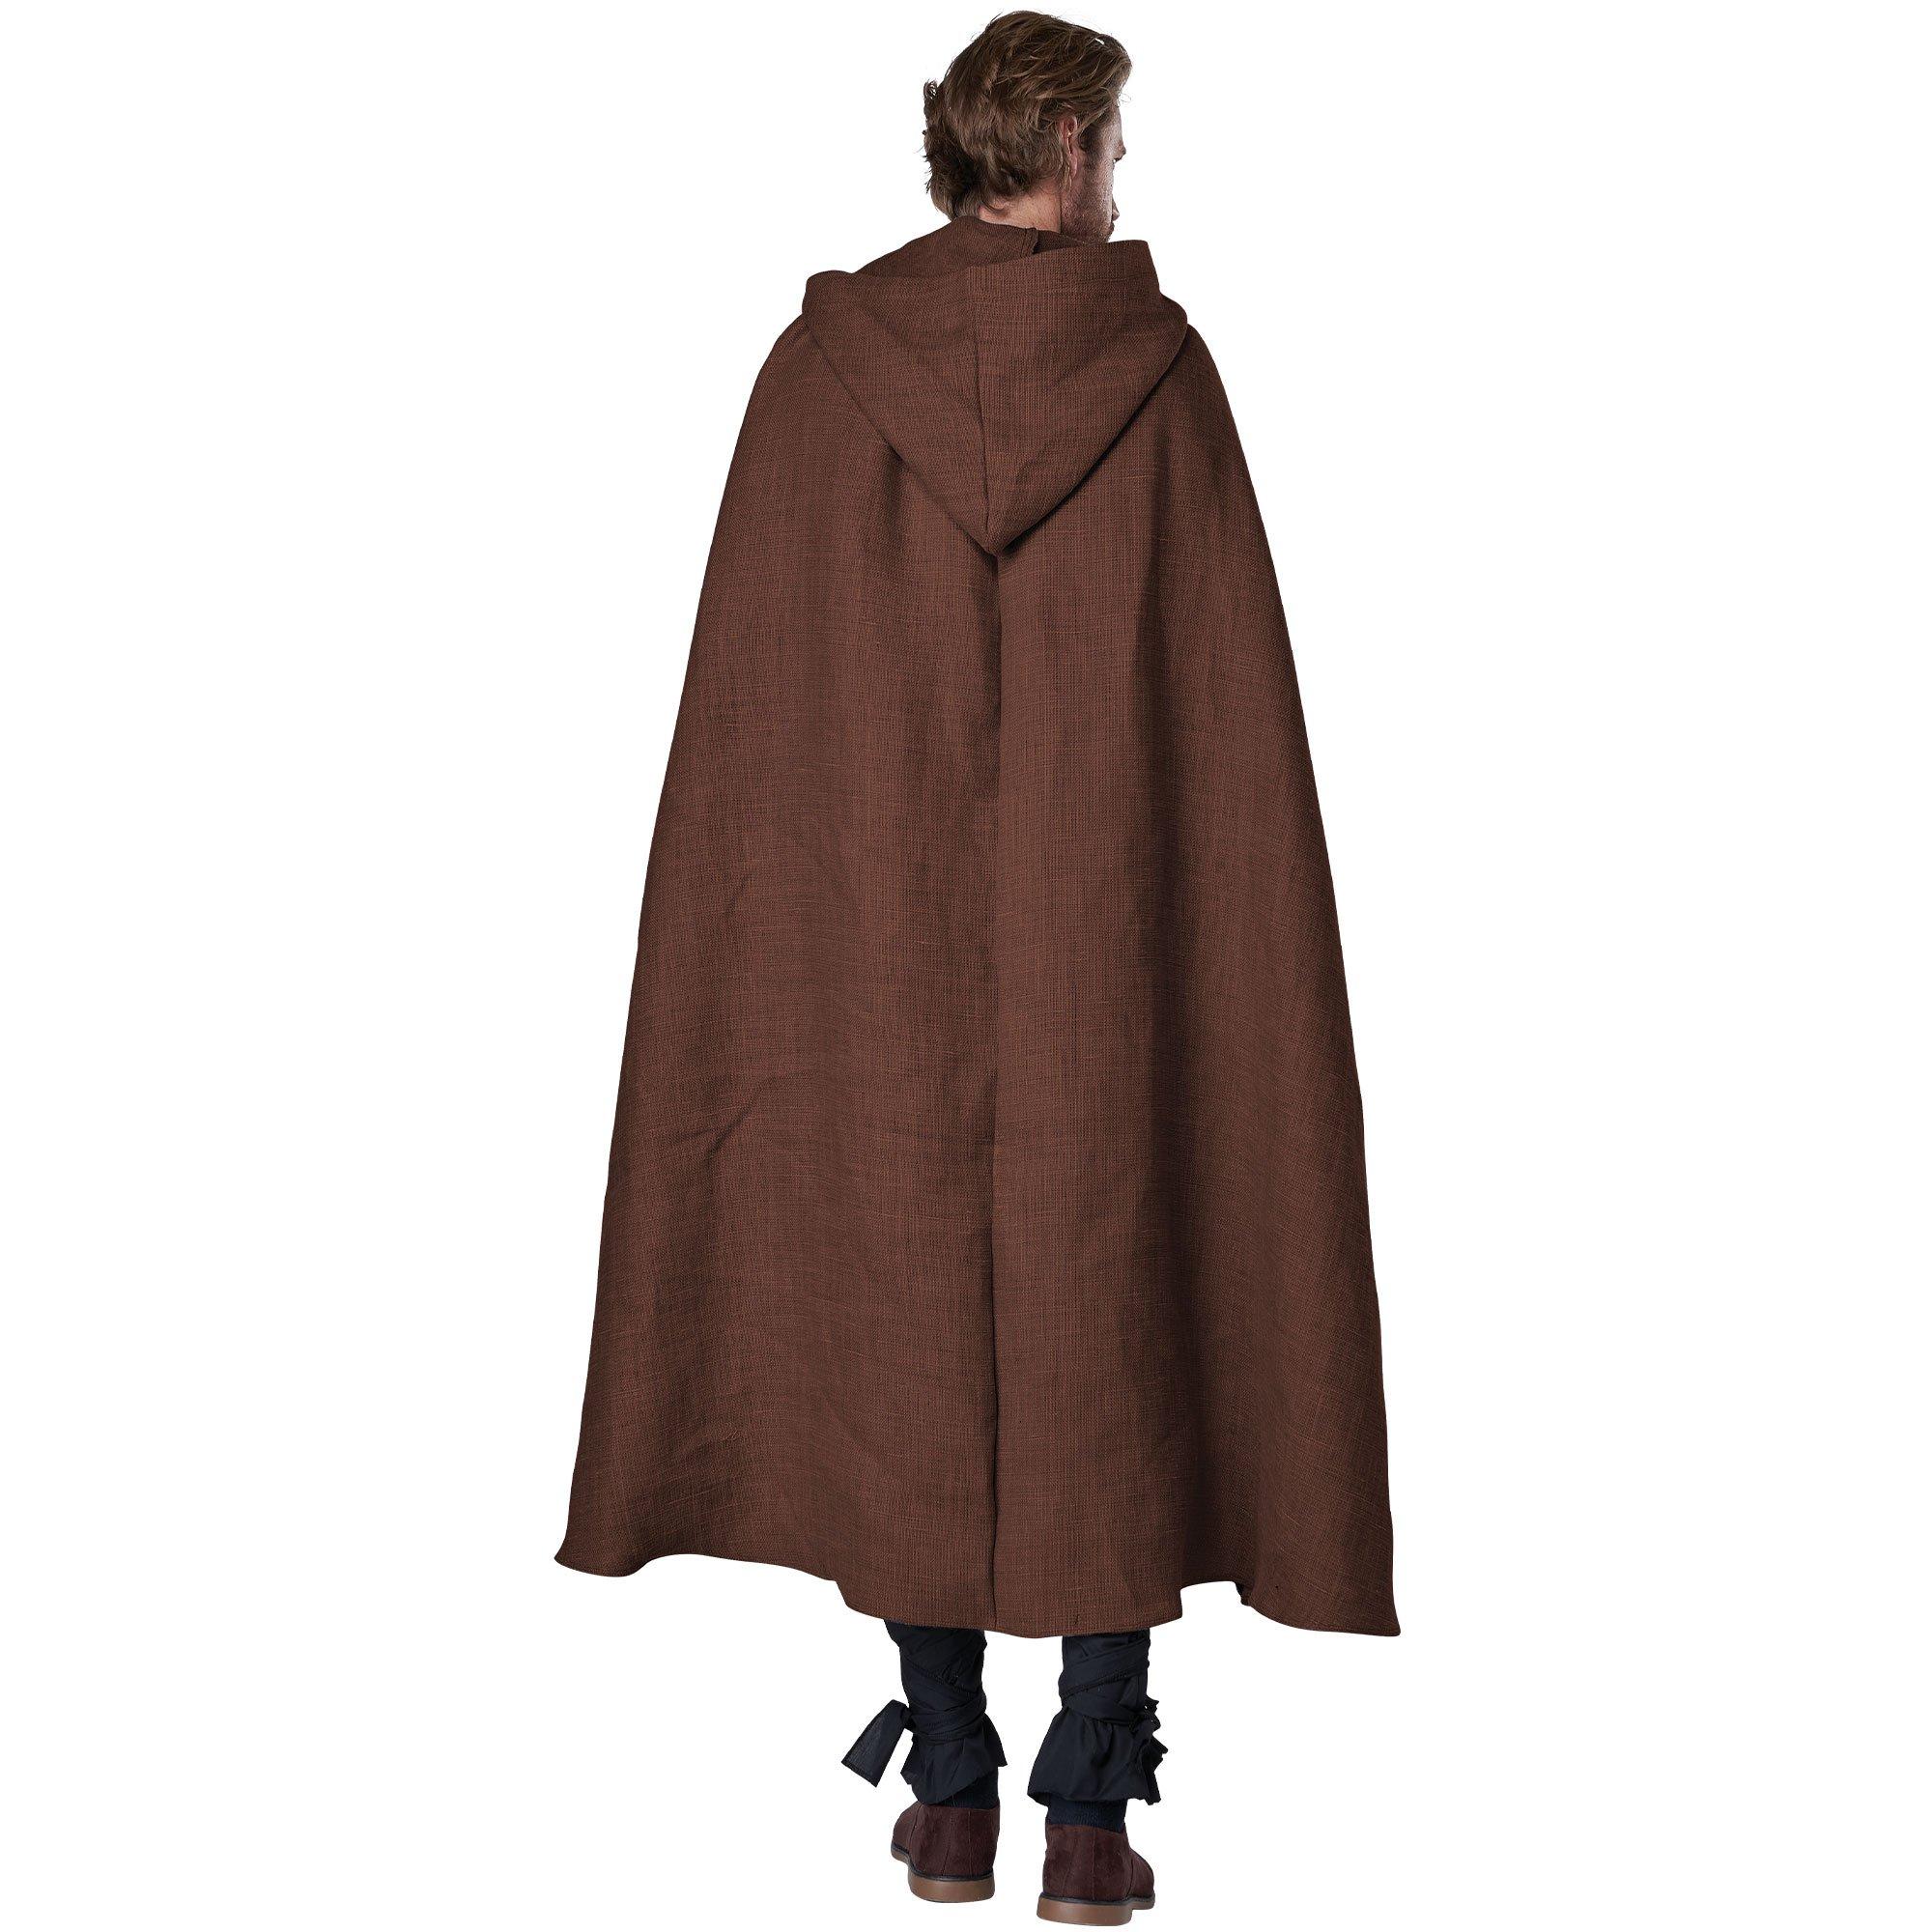 Adult Brown Hooded Cloak